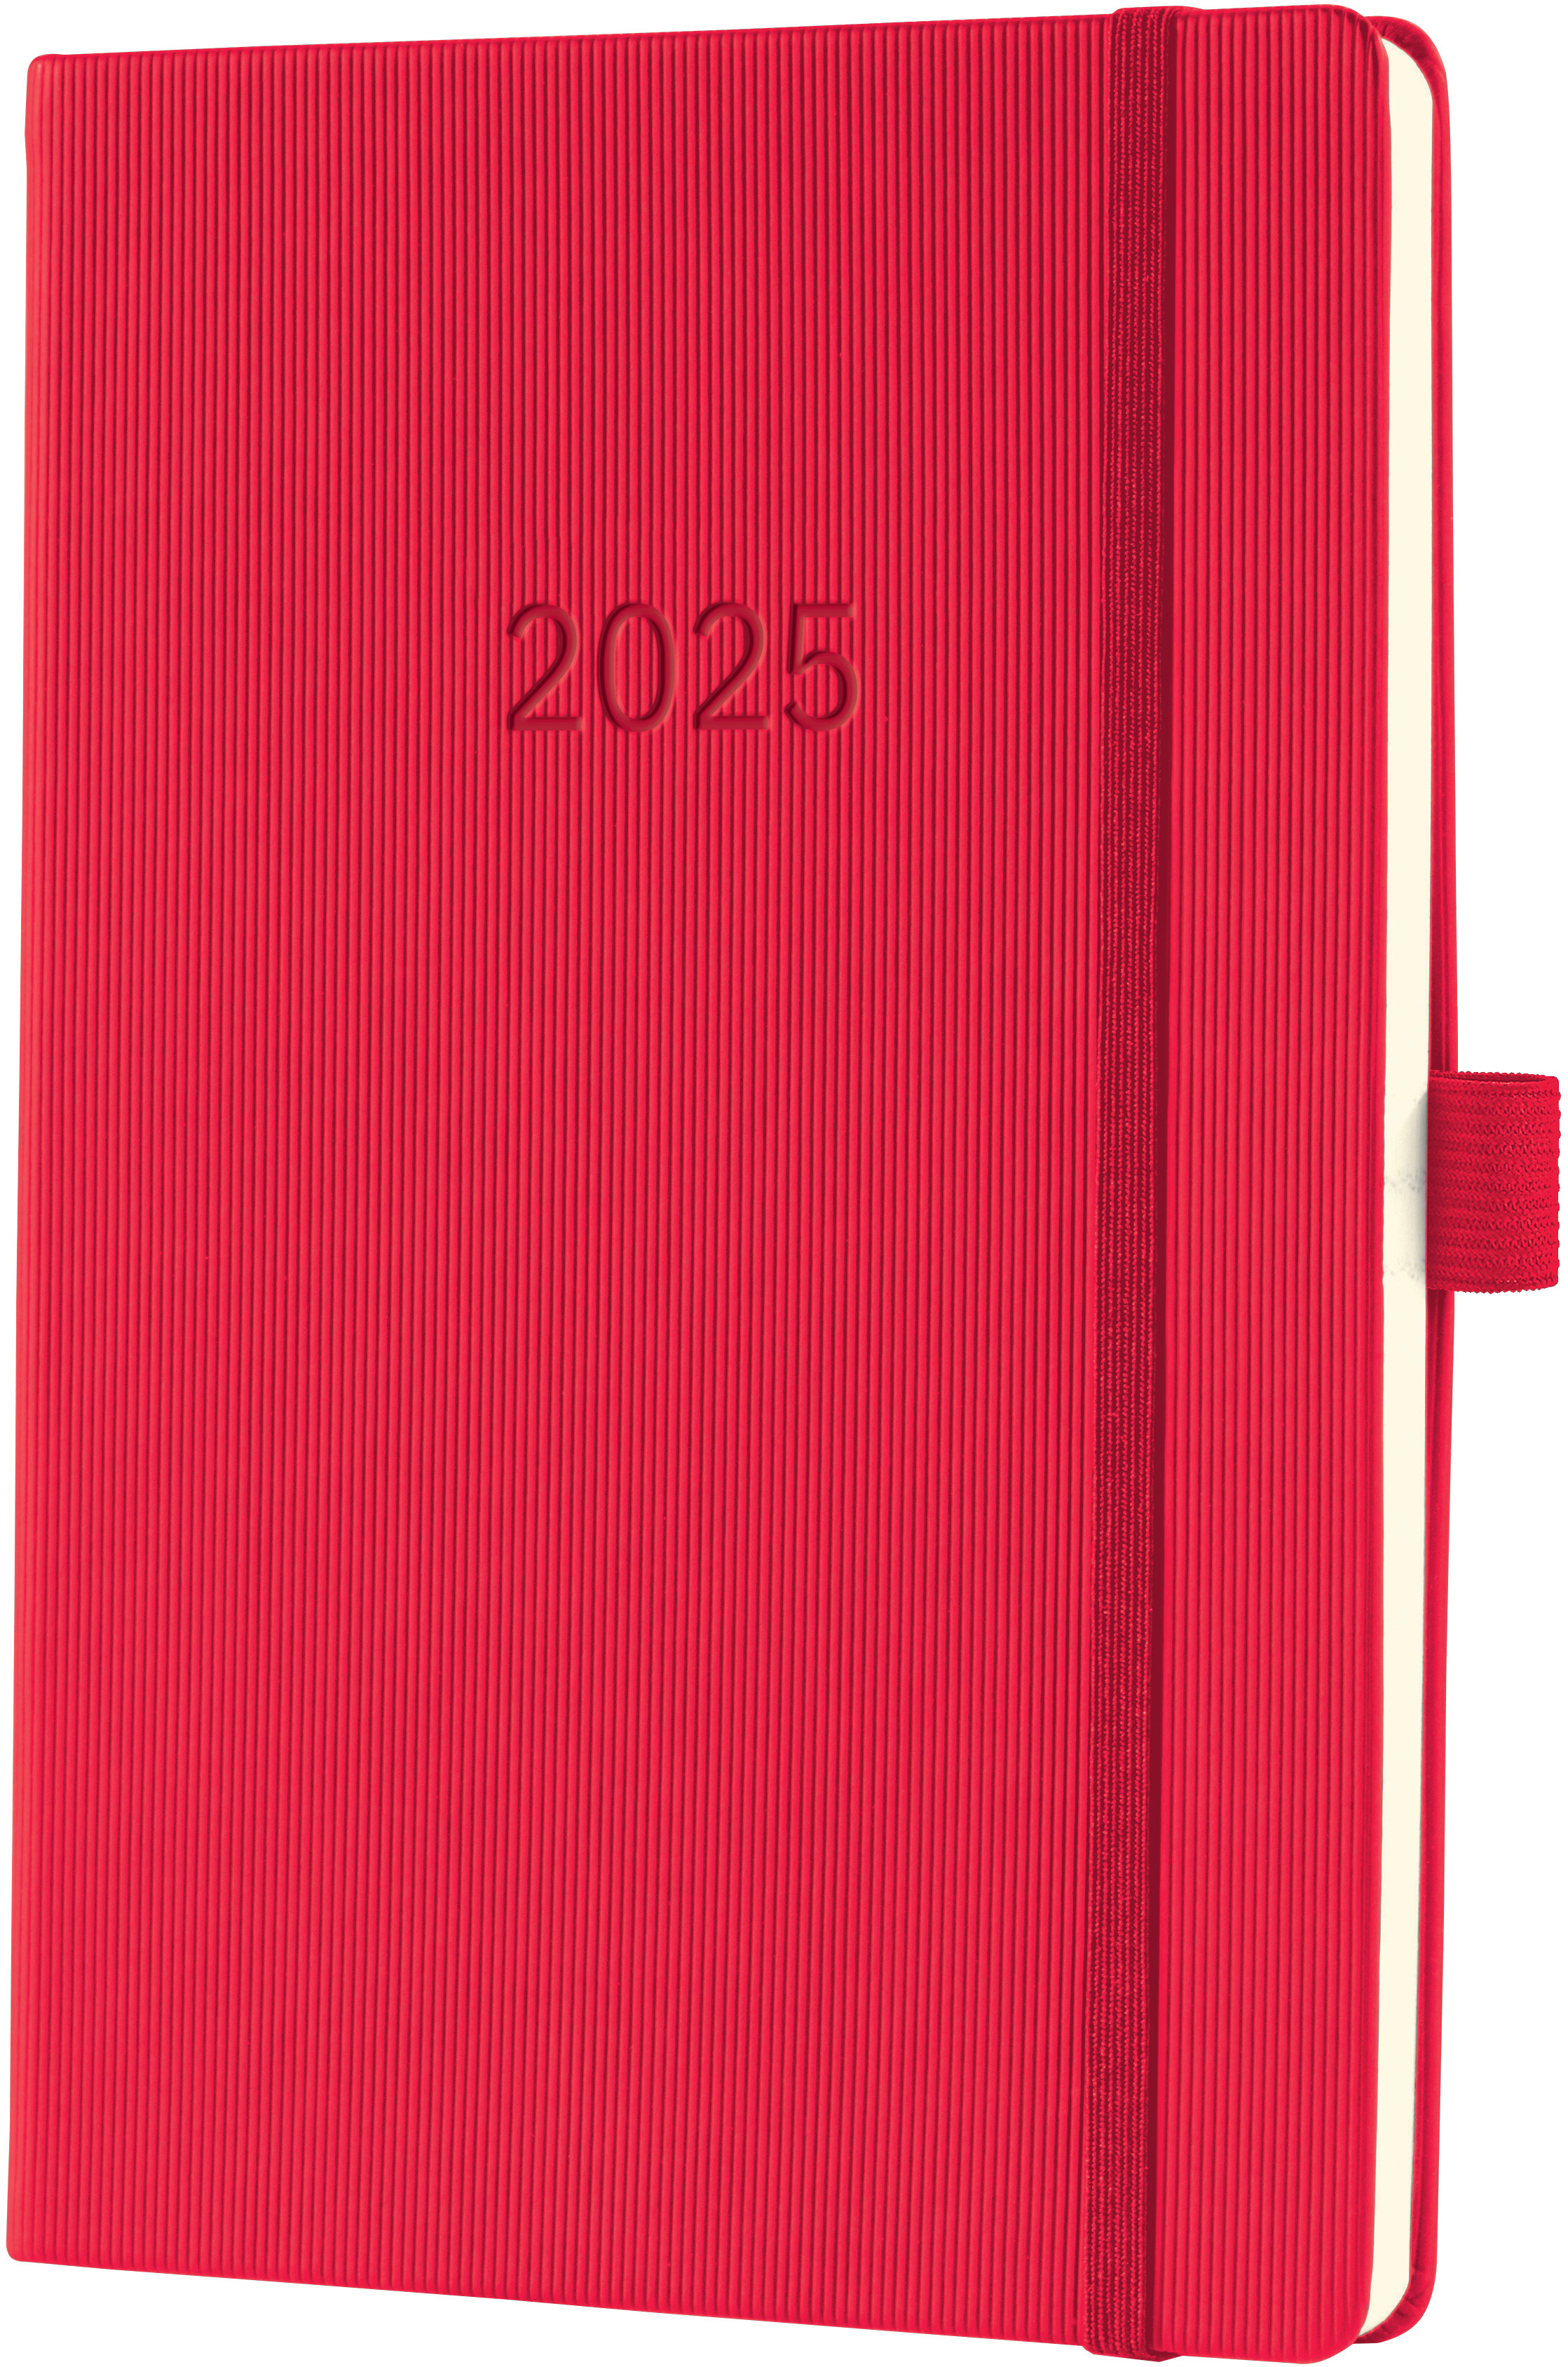 CONCEPTUM Calendrier semainier 2025 C2564 1S/2P rouge 21.3x14.8cm